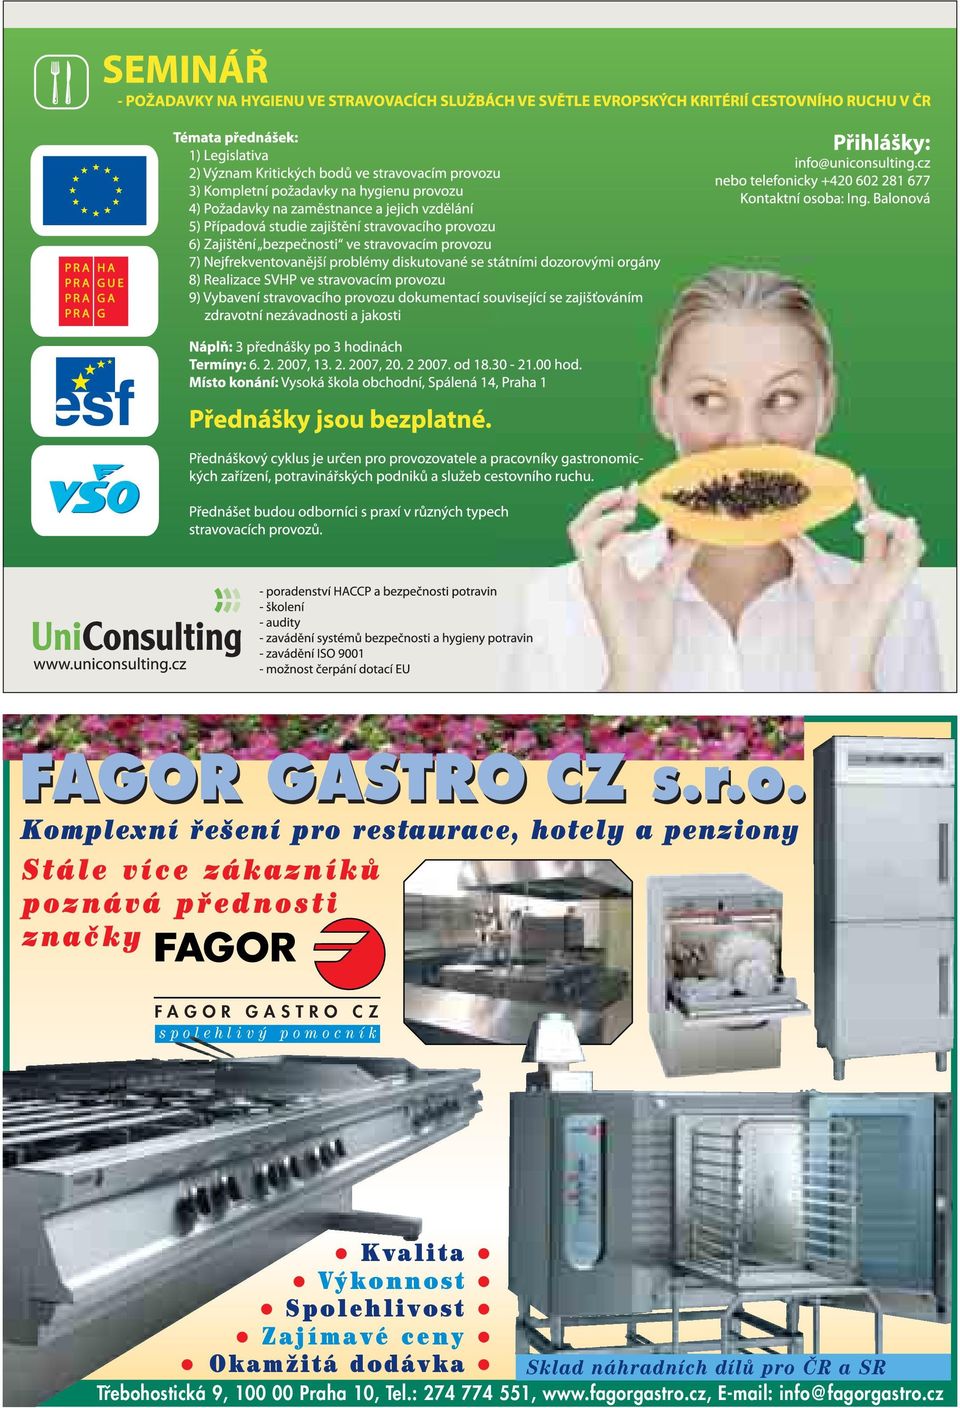 přednosti značky FAGOR GASTRO CZ spolehlivý pomocník Kvalita Výkonnost Spolehlivost